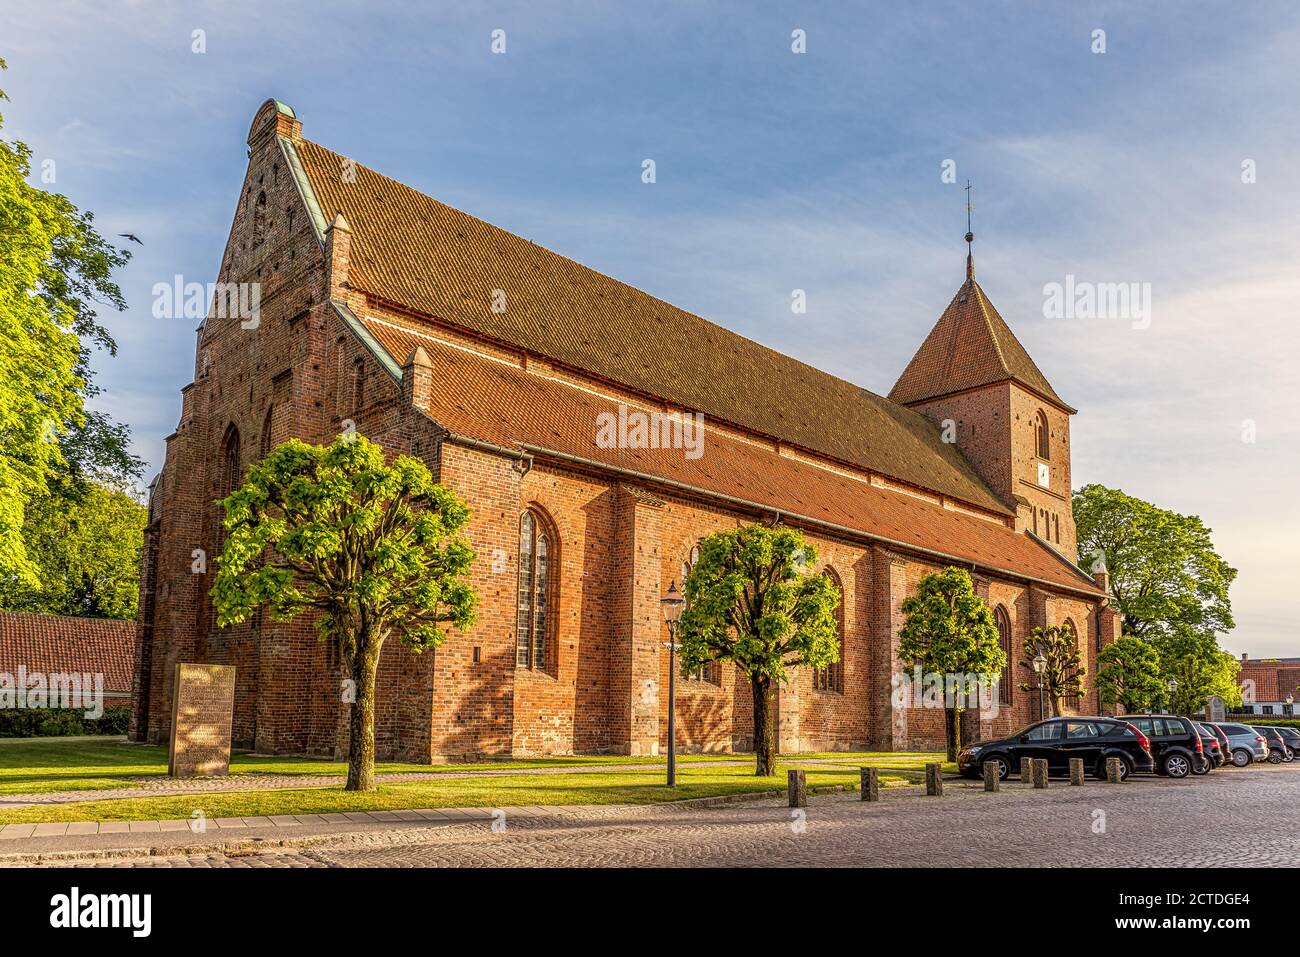 MLS. Catharinæ chiesa, è stata costruita in mattoni rossi circa 1450, Ribe, Danimarca, 31 maggio 2020 Foto Stock